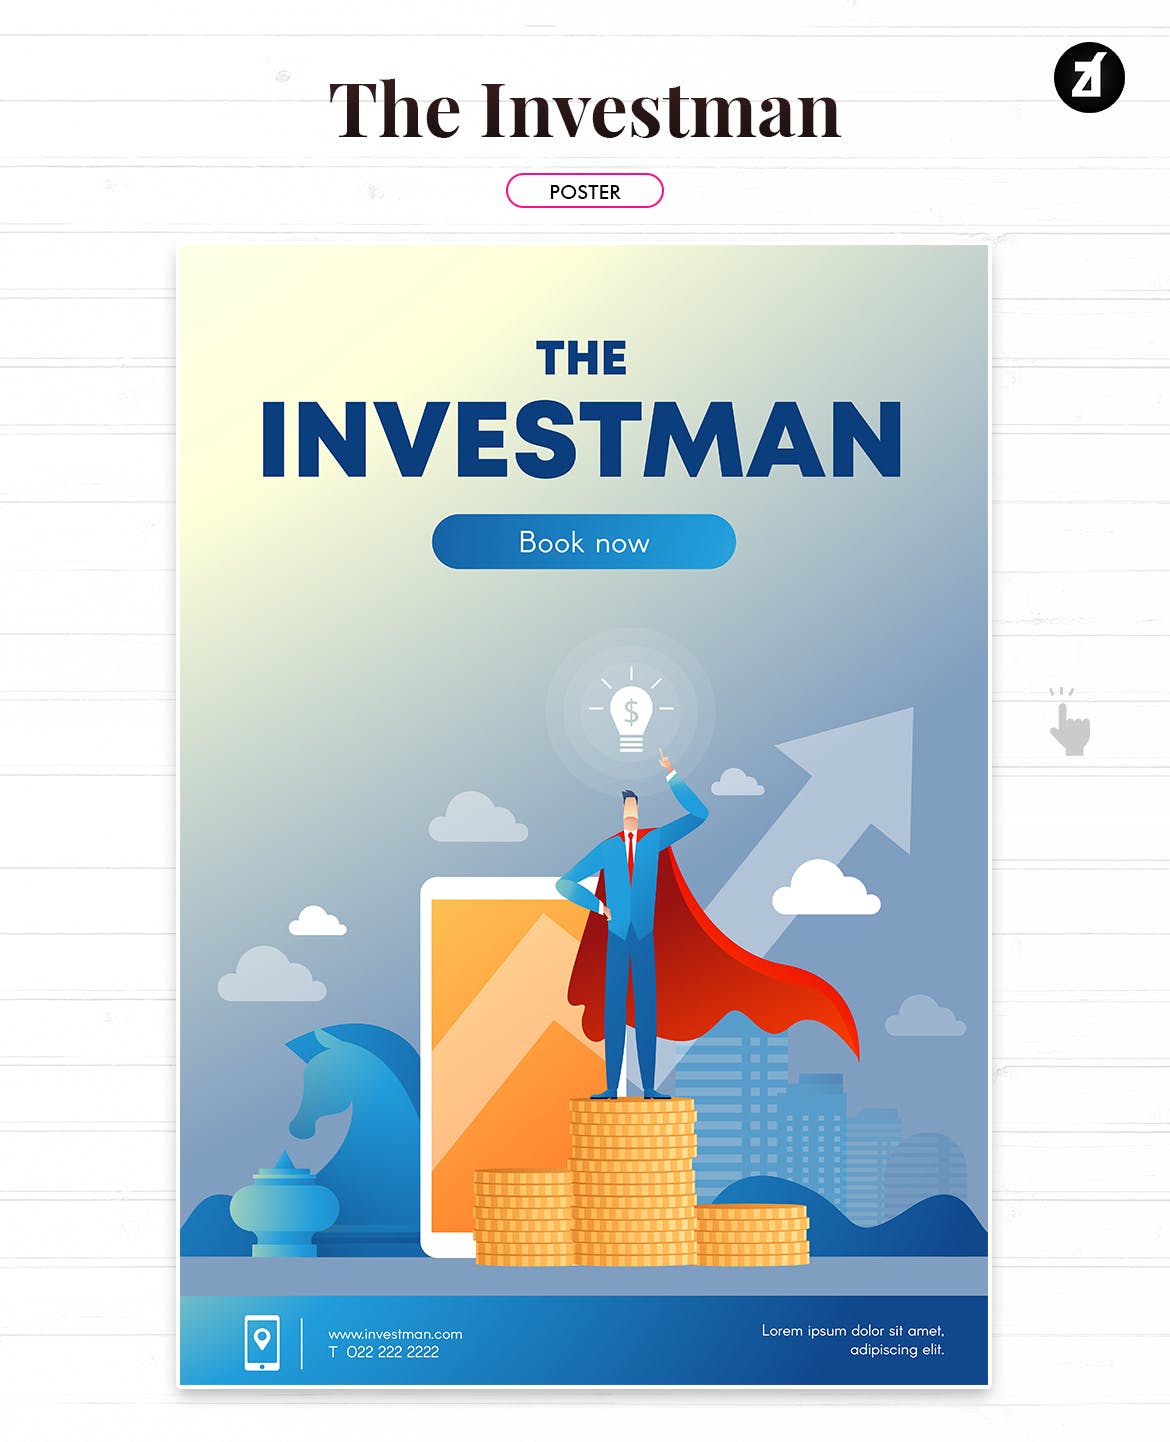 投资者主题矢量非凡图库精选概念插画素材 The investman illustration with text layout插图(1)